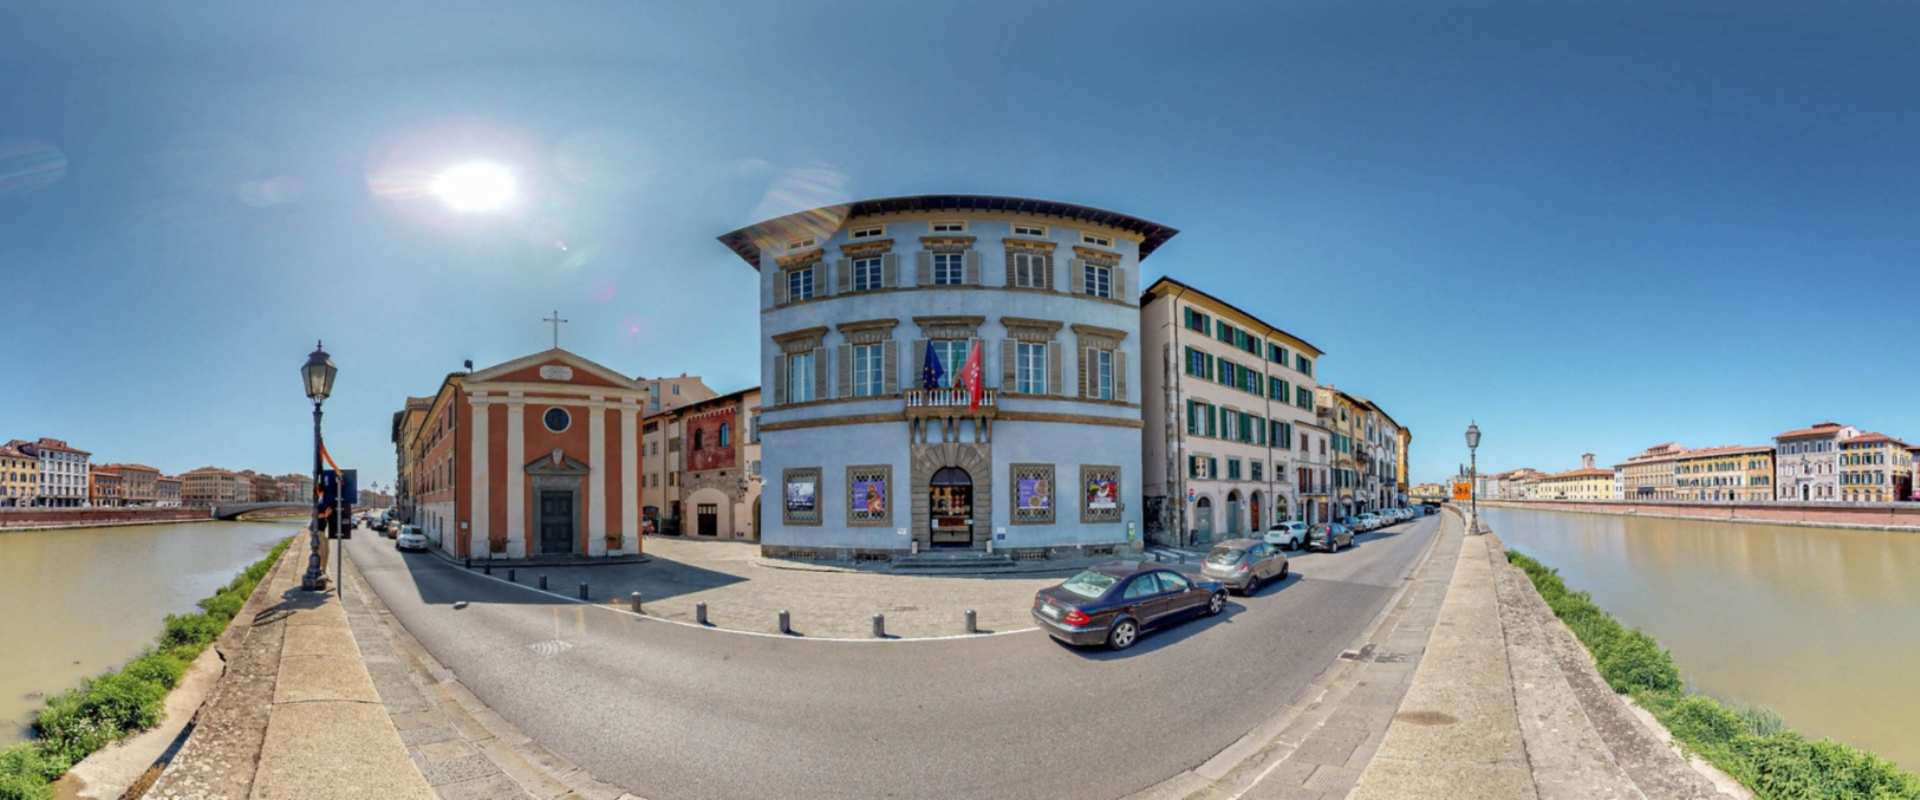 Palazzo Blu, Pisa